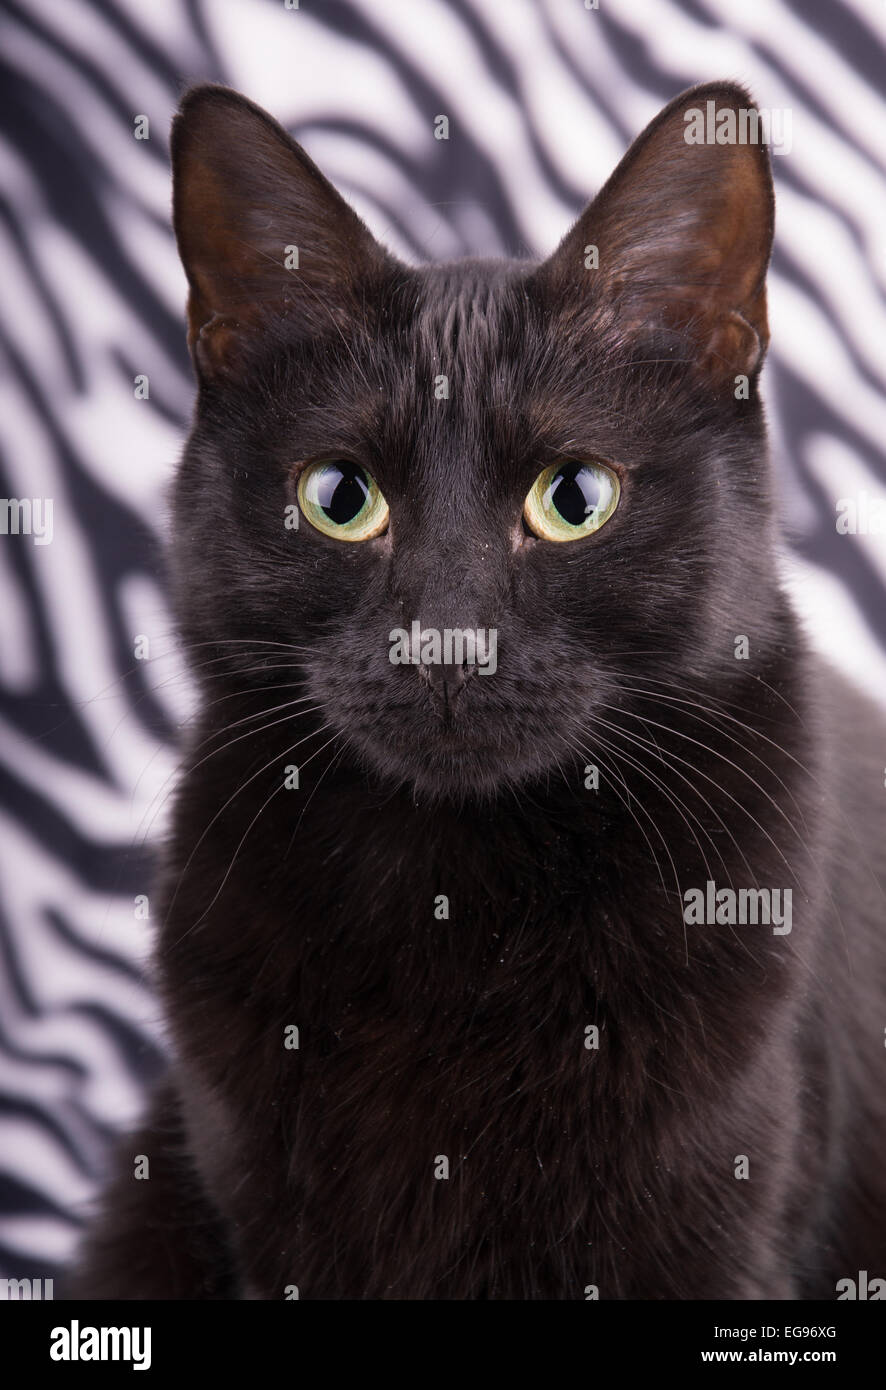 Closeup of a beautiful black cat against zebra striped background Stock Photo